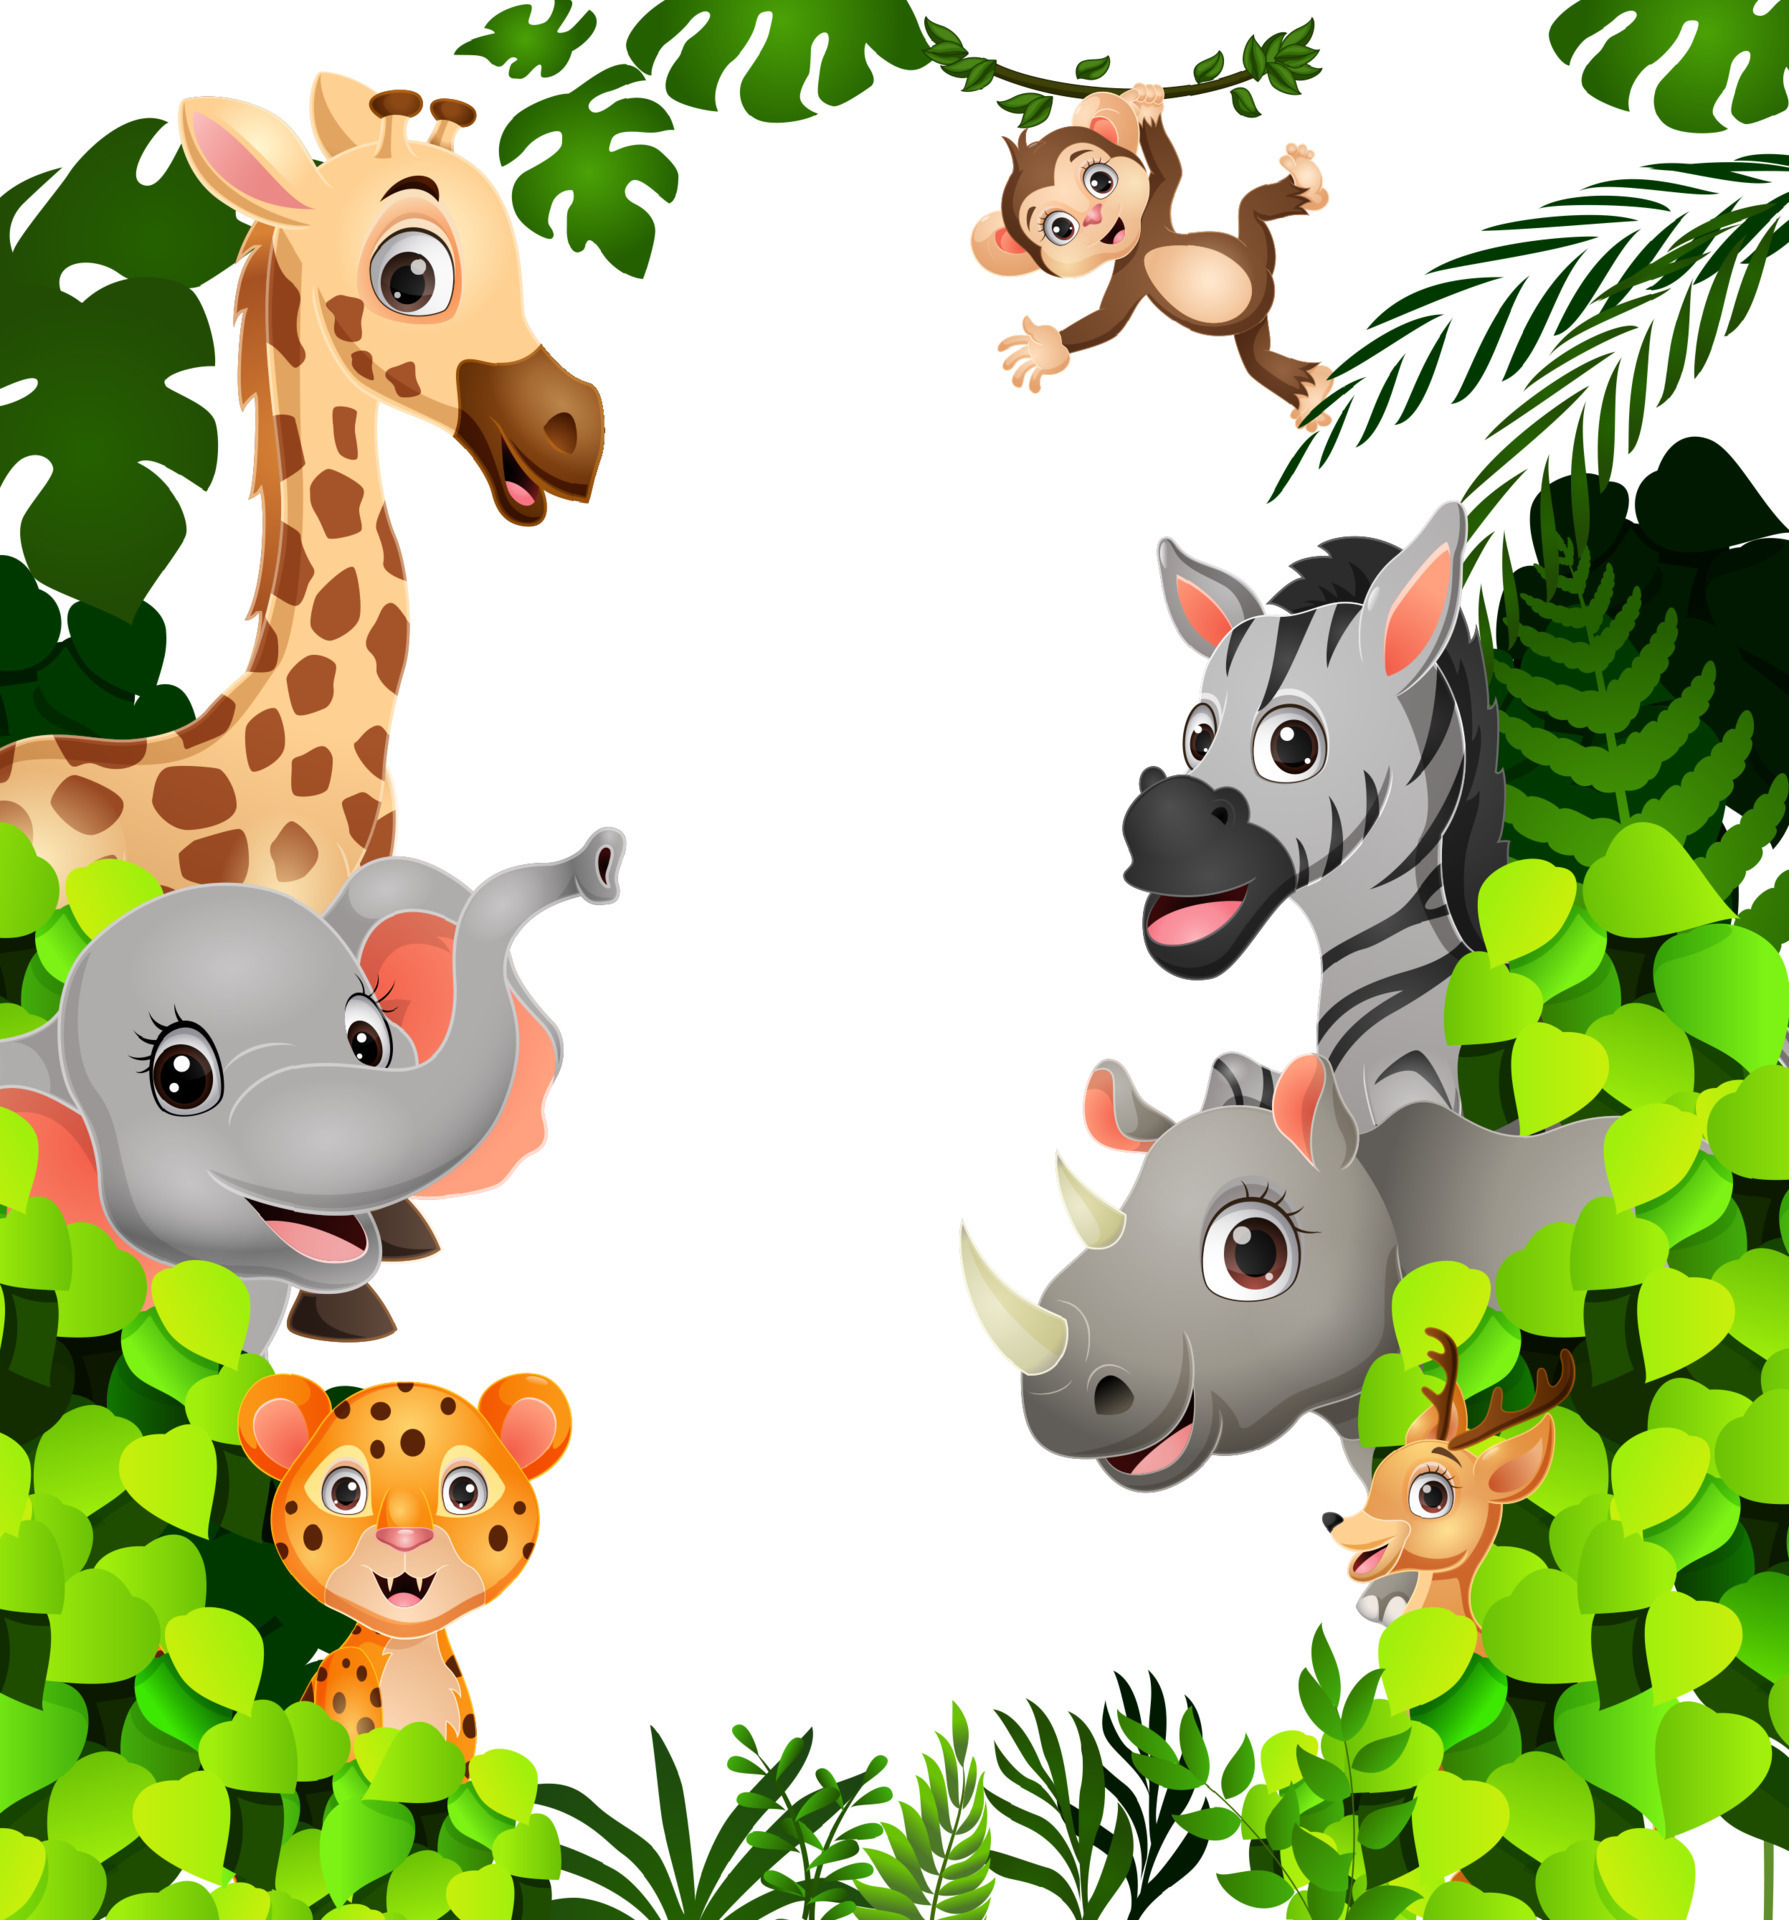 https://static.vecteezy.com/ti/vecteur-libre/p3/14995754-dessin-anime-mignon-d-animaux-sauvages-dans-la-jungle-vectoriel.jpg